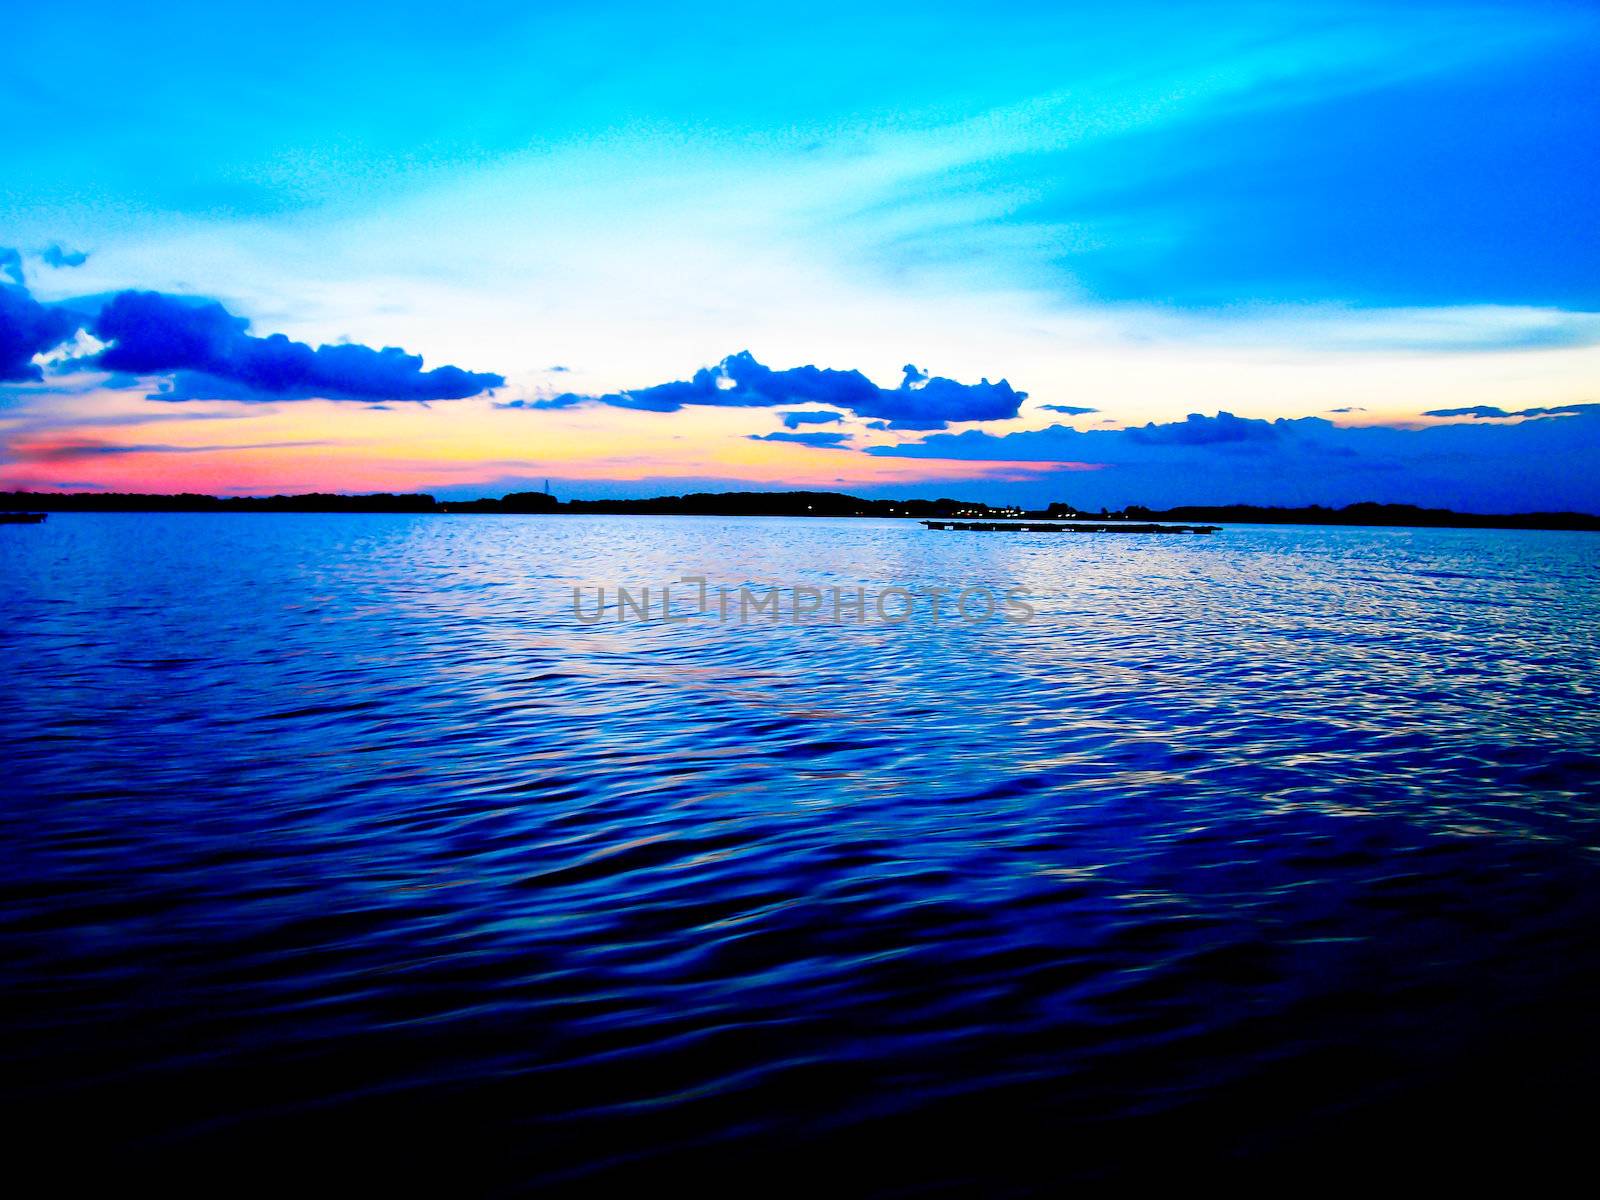 Twilight sunset in the sea by gjeerawut